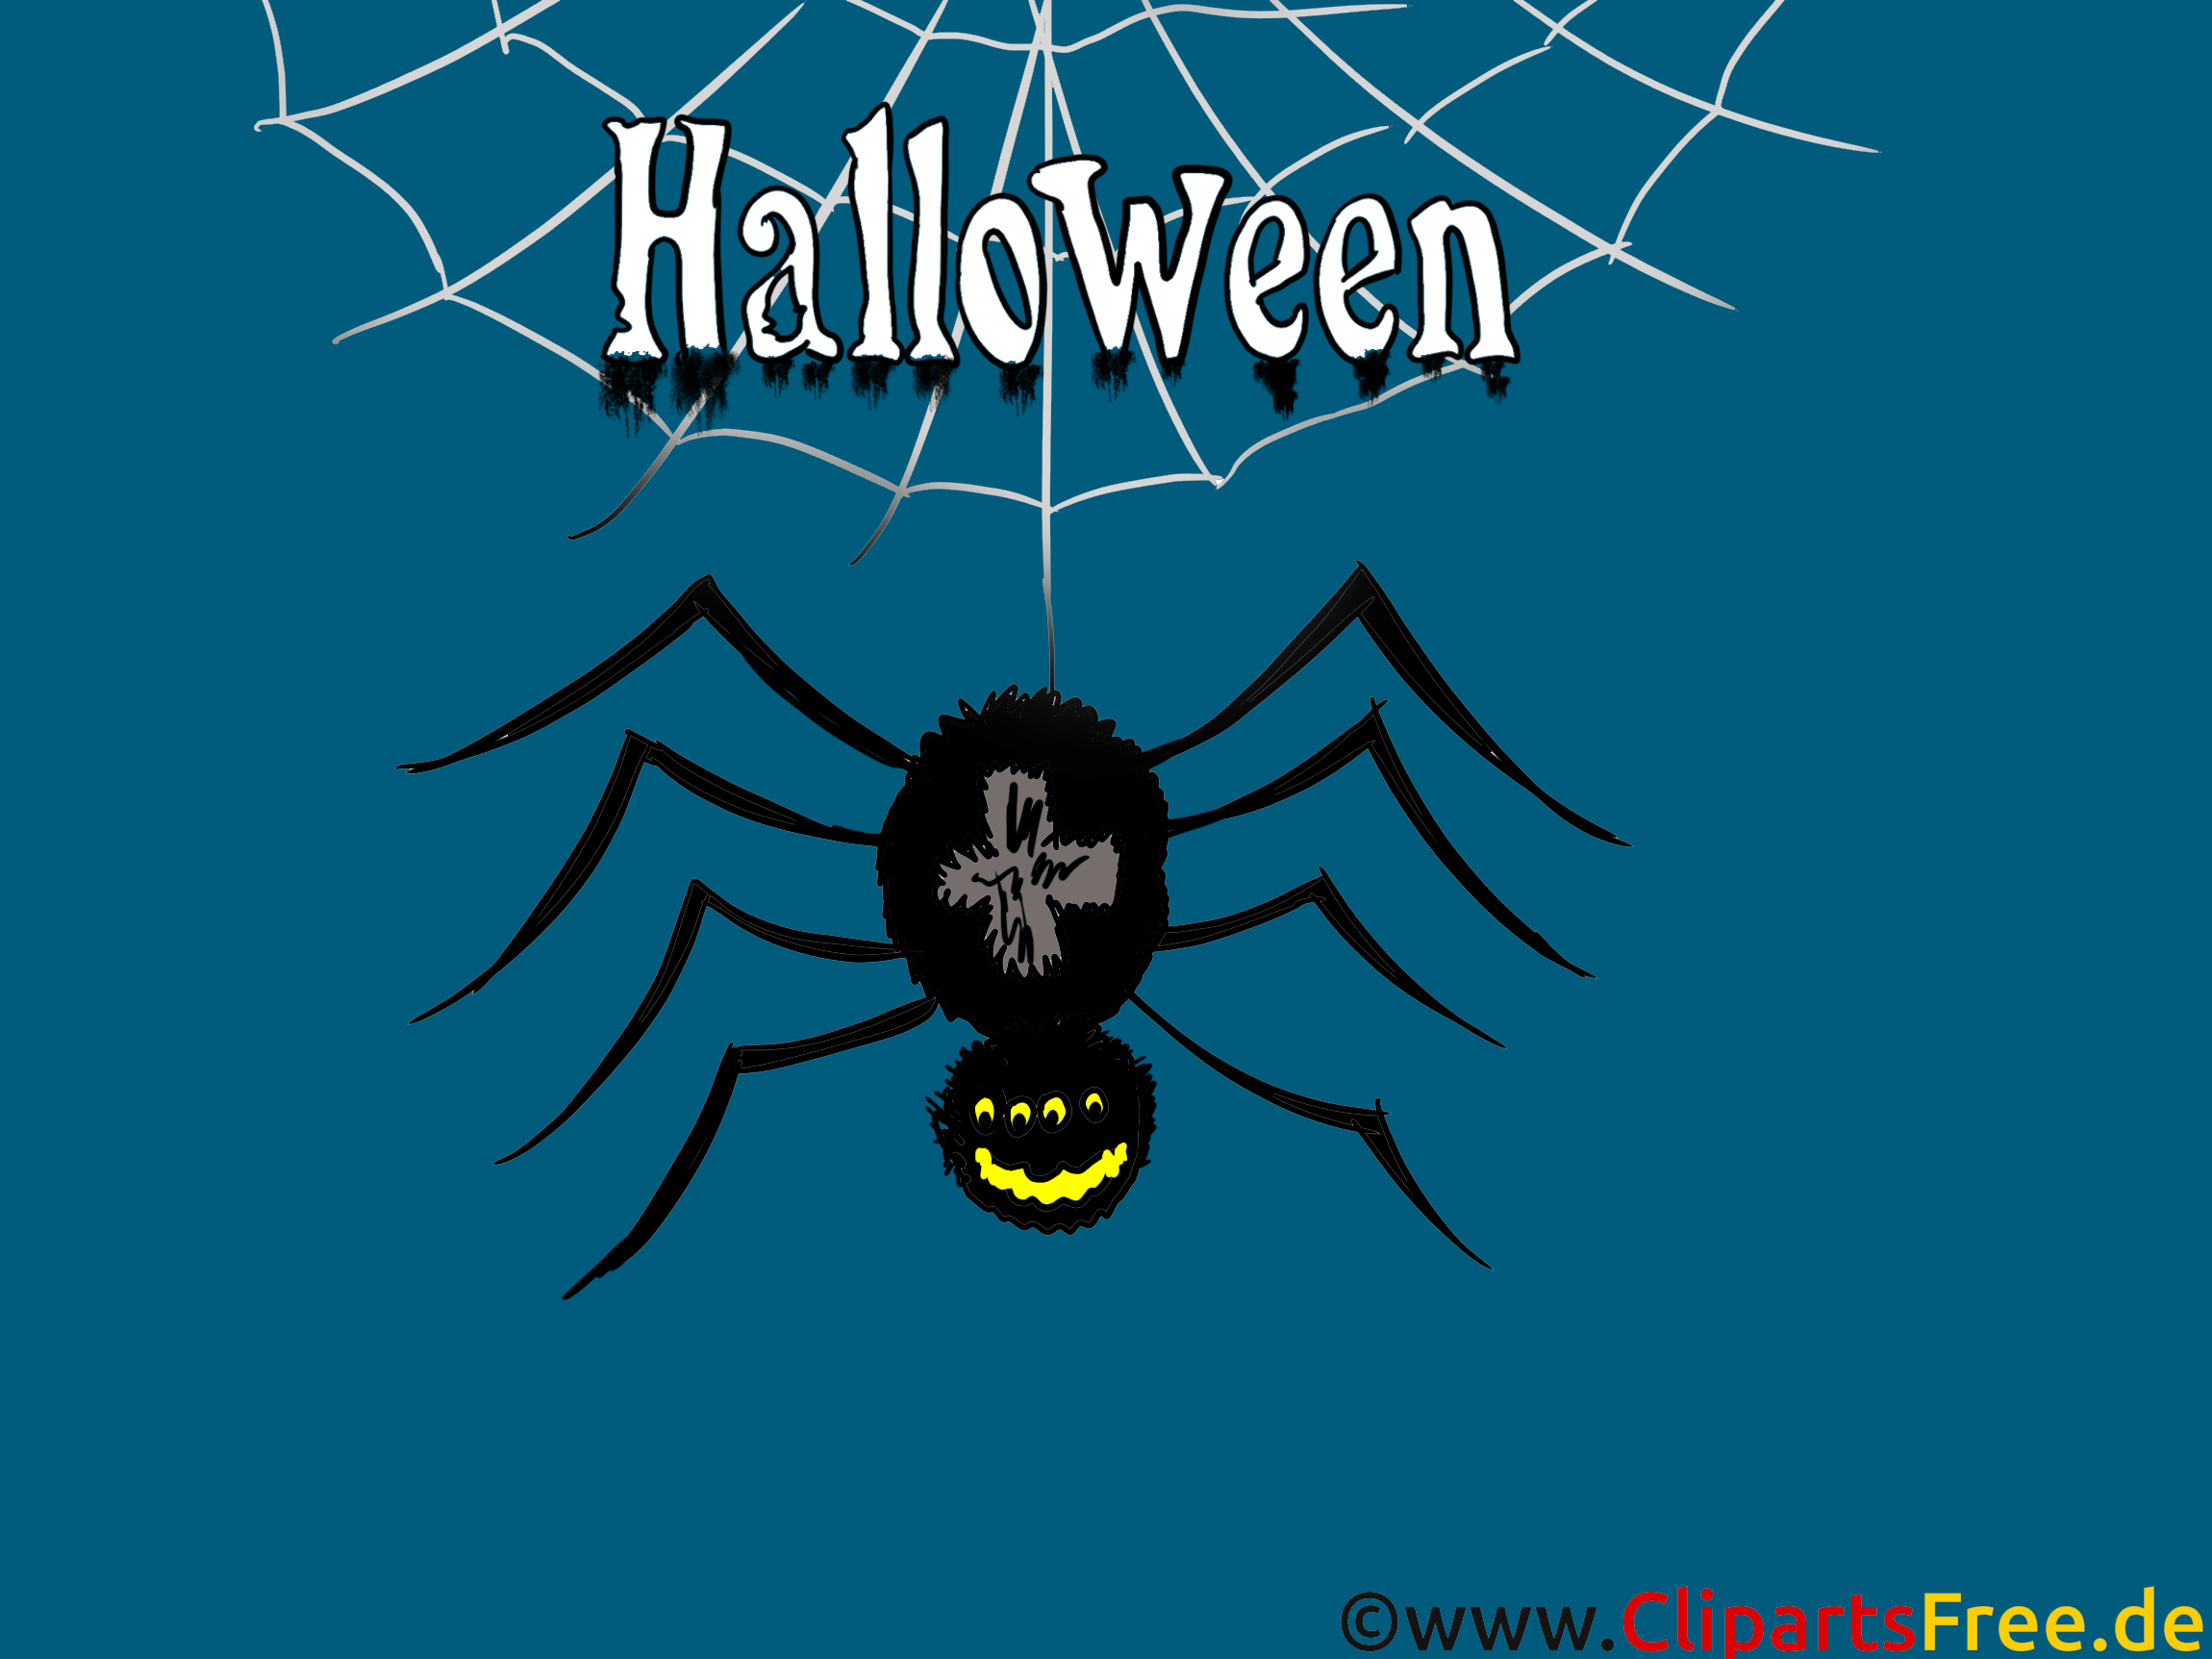 Araignée images - Halloween dessins gratuits